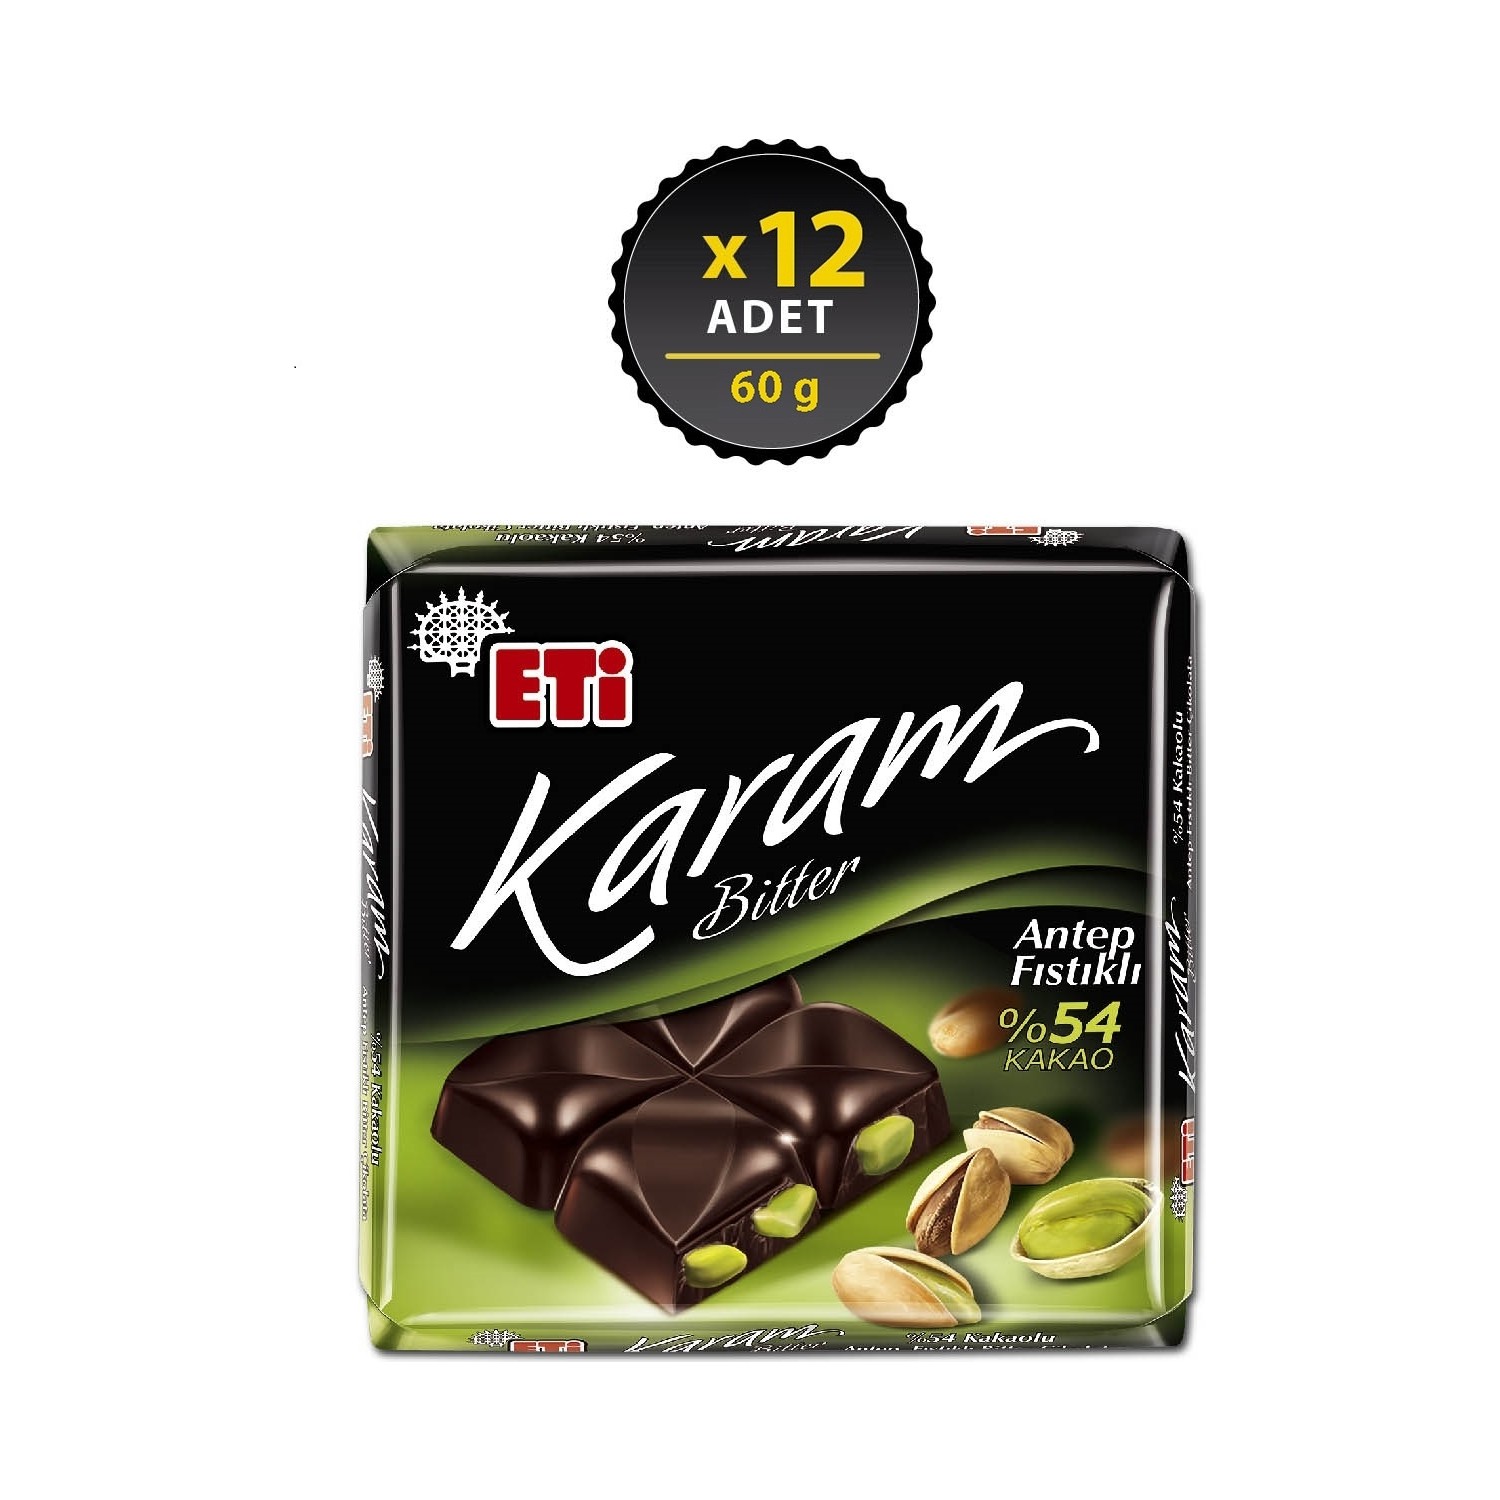 Eti Karam Antep Fıstıklı Kakaolu Bitter Çikolata 60 g x 12 Fiyatı